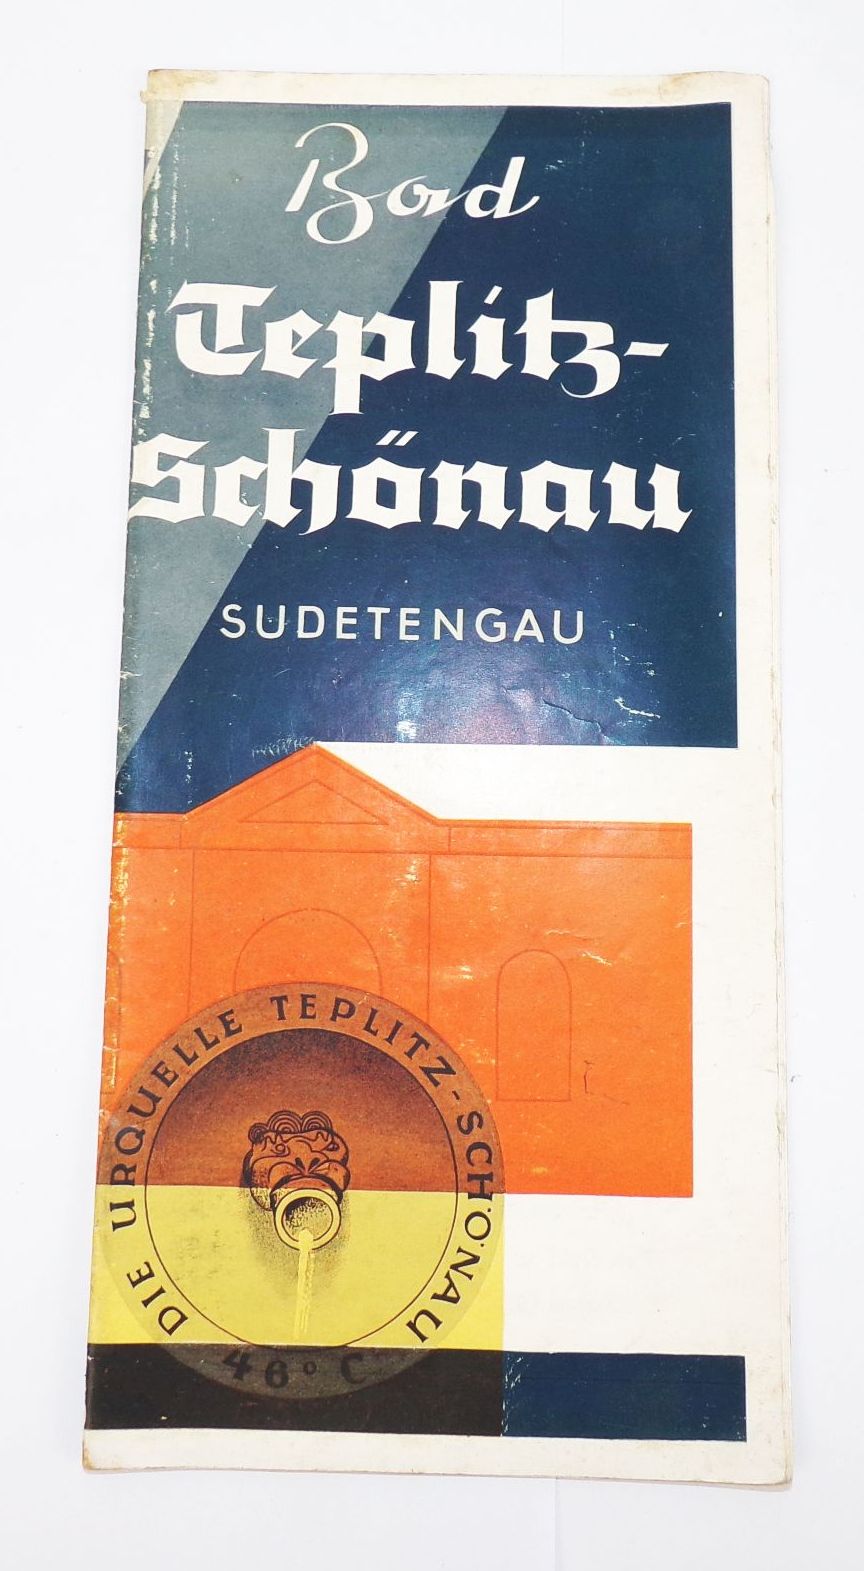 Altes Prospekt Bad Teplitz Schönau Sudetengau um 1939 Teplice Tschechien